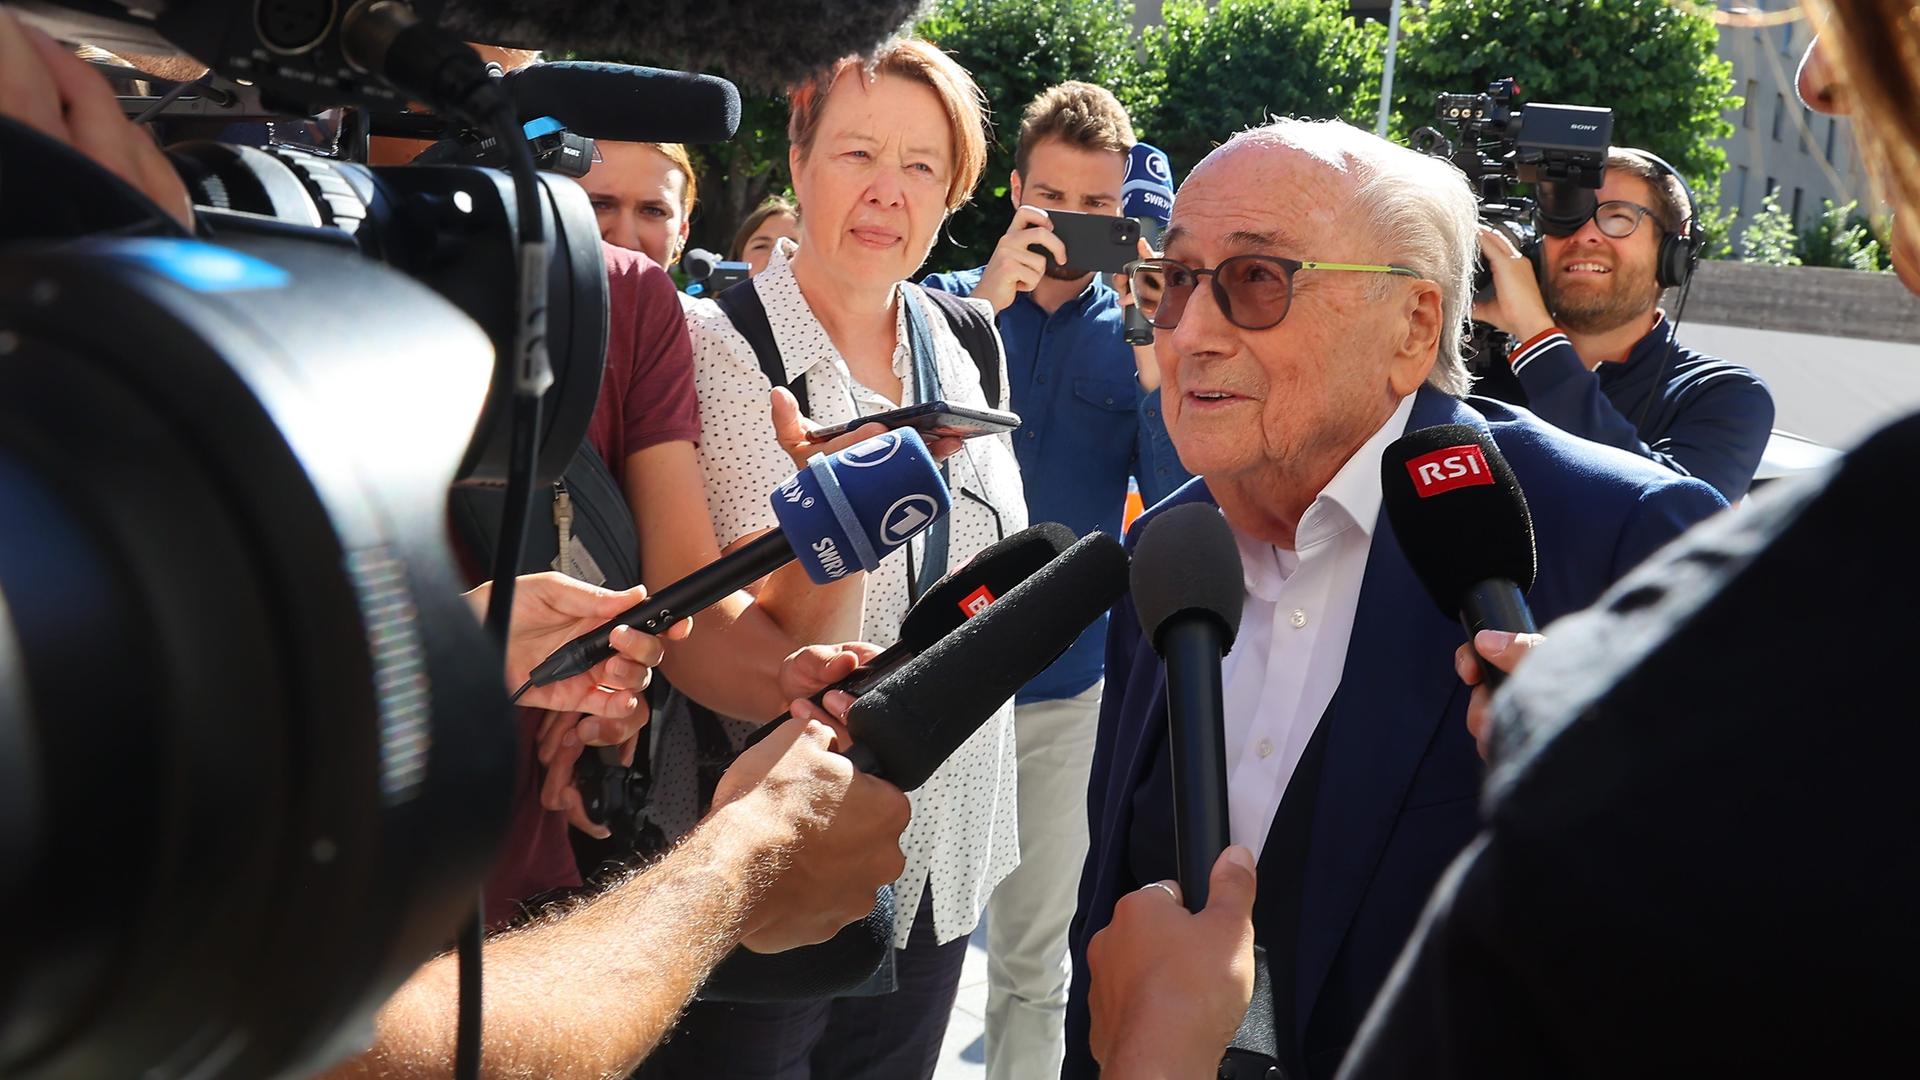 Der ehemalige FIFA-Präsident Sepp Blatter ist umringt von Journalisten